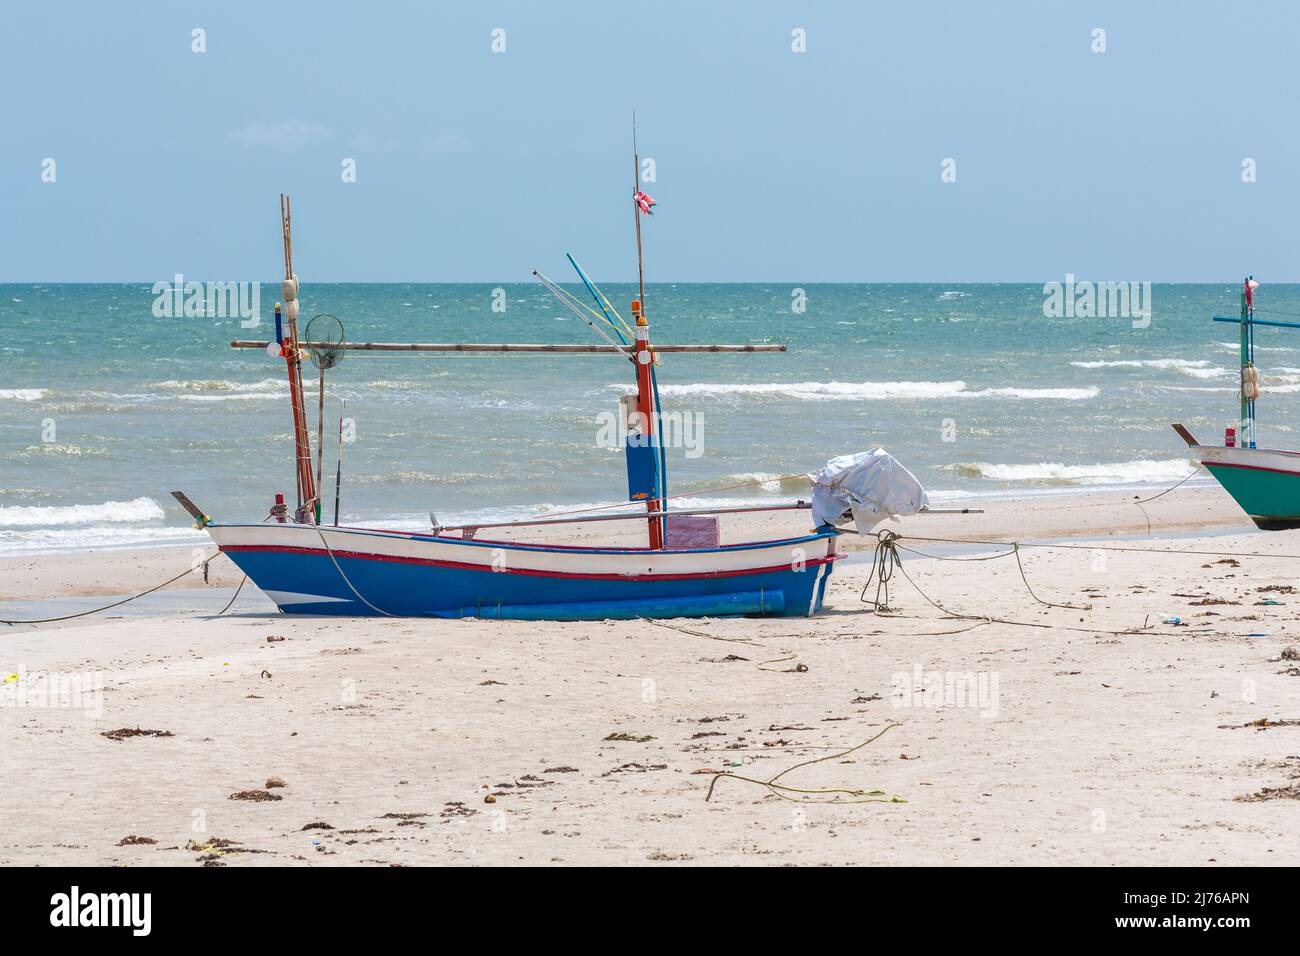 Bateaux de pêche sur la plage, complexe hôtelier Dusit Thani, Hua Hin, province de Prachuap Khiri Khan, Thaïlande, Golfe de Thaïlande, Asie Banque D'Images